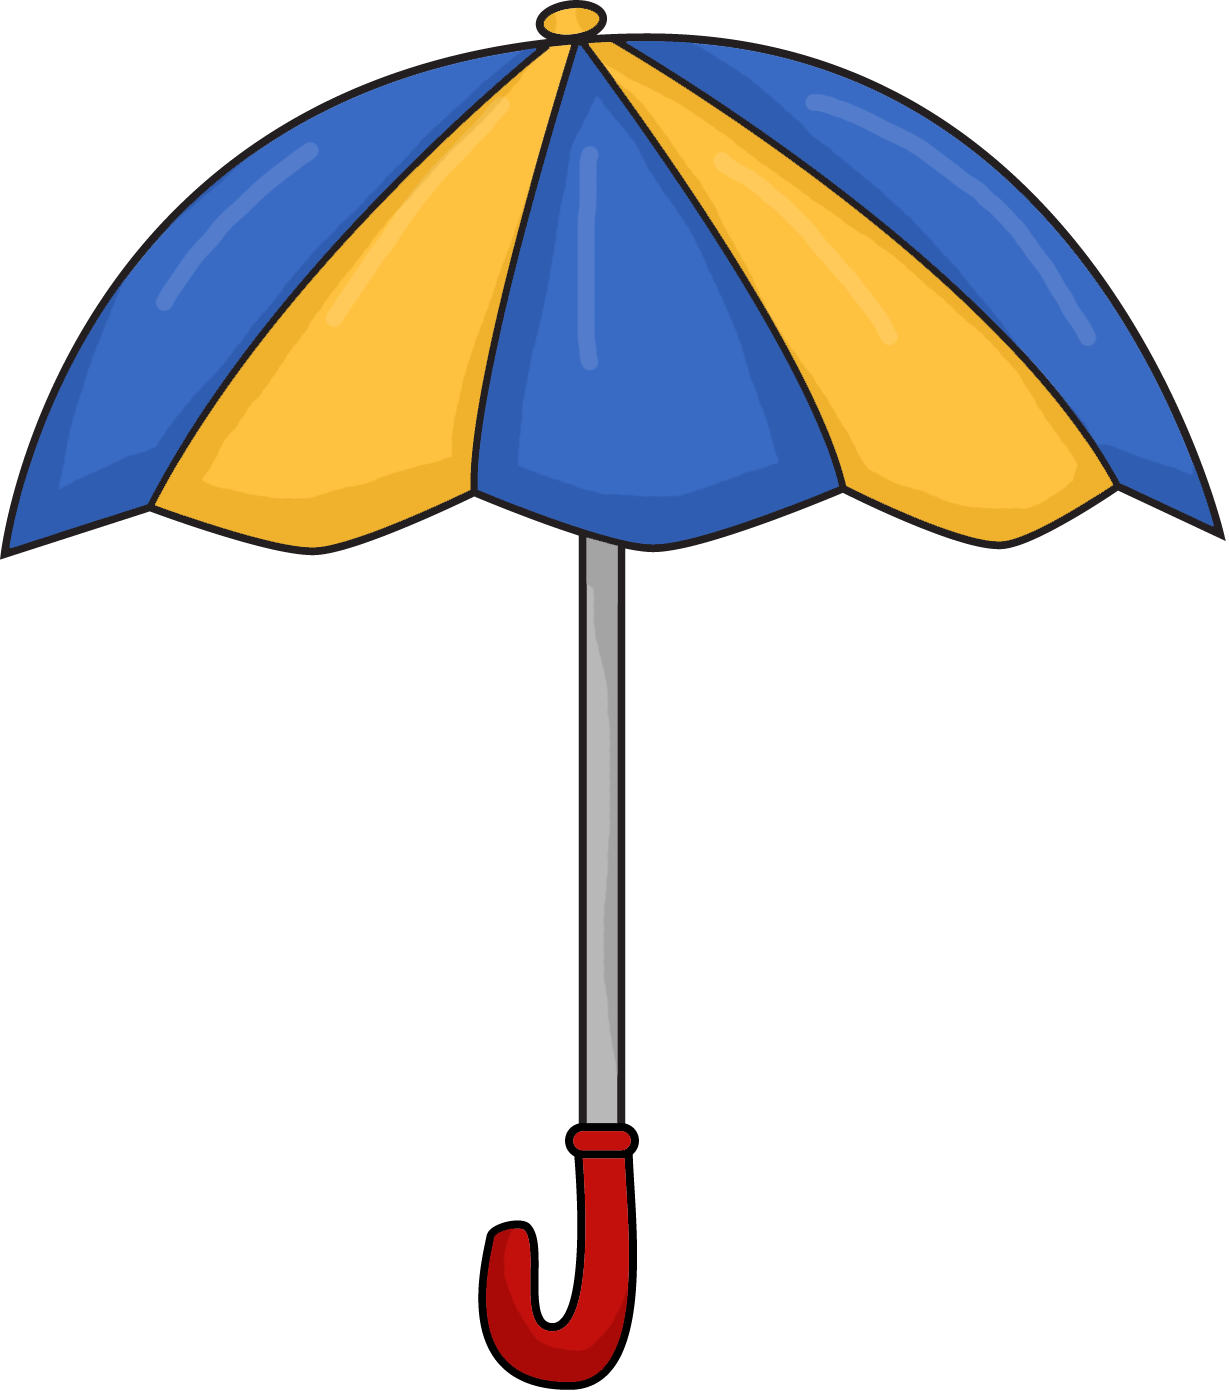 https://www.pngkey.com/png/full/6-61493_umbrella-png-picture-umbrella-cartoon-images-png.png